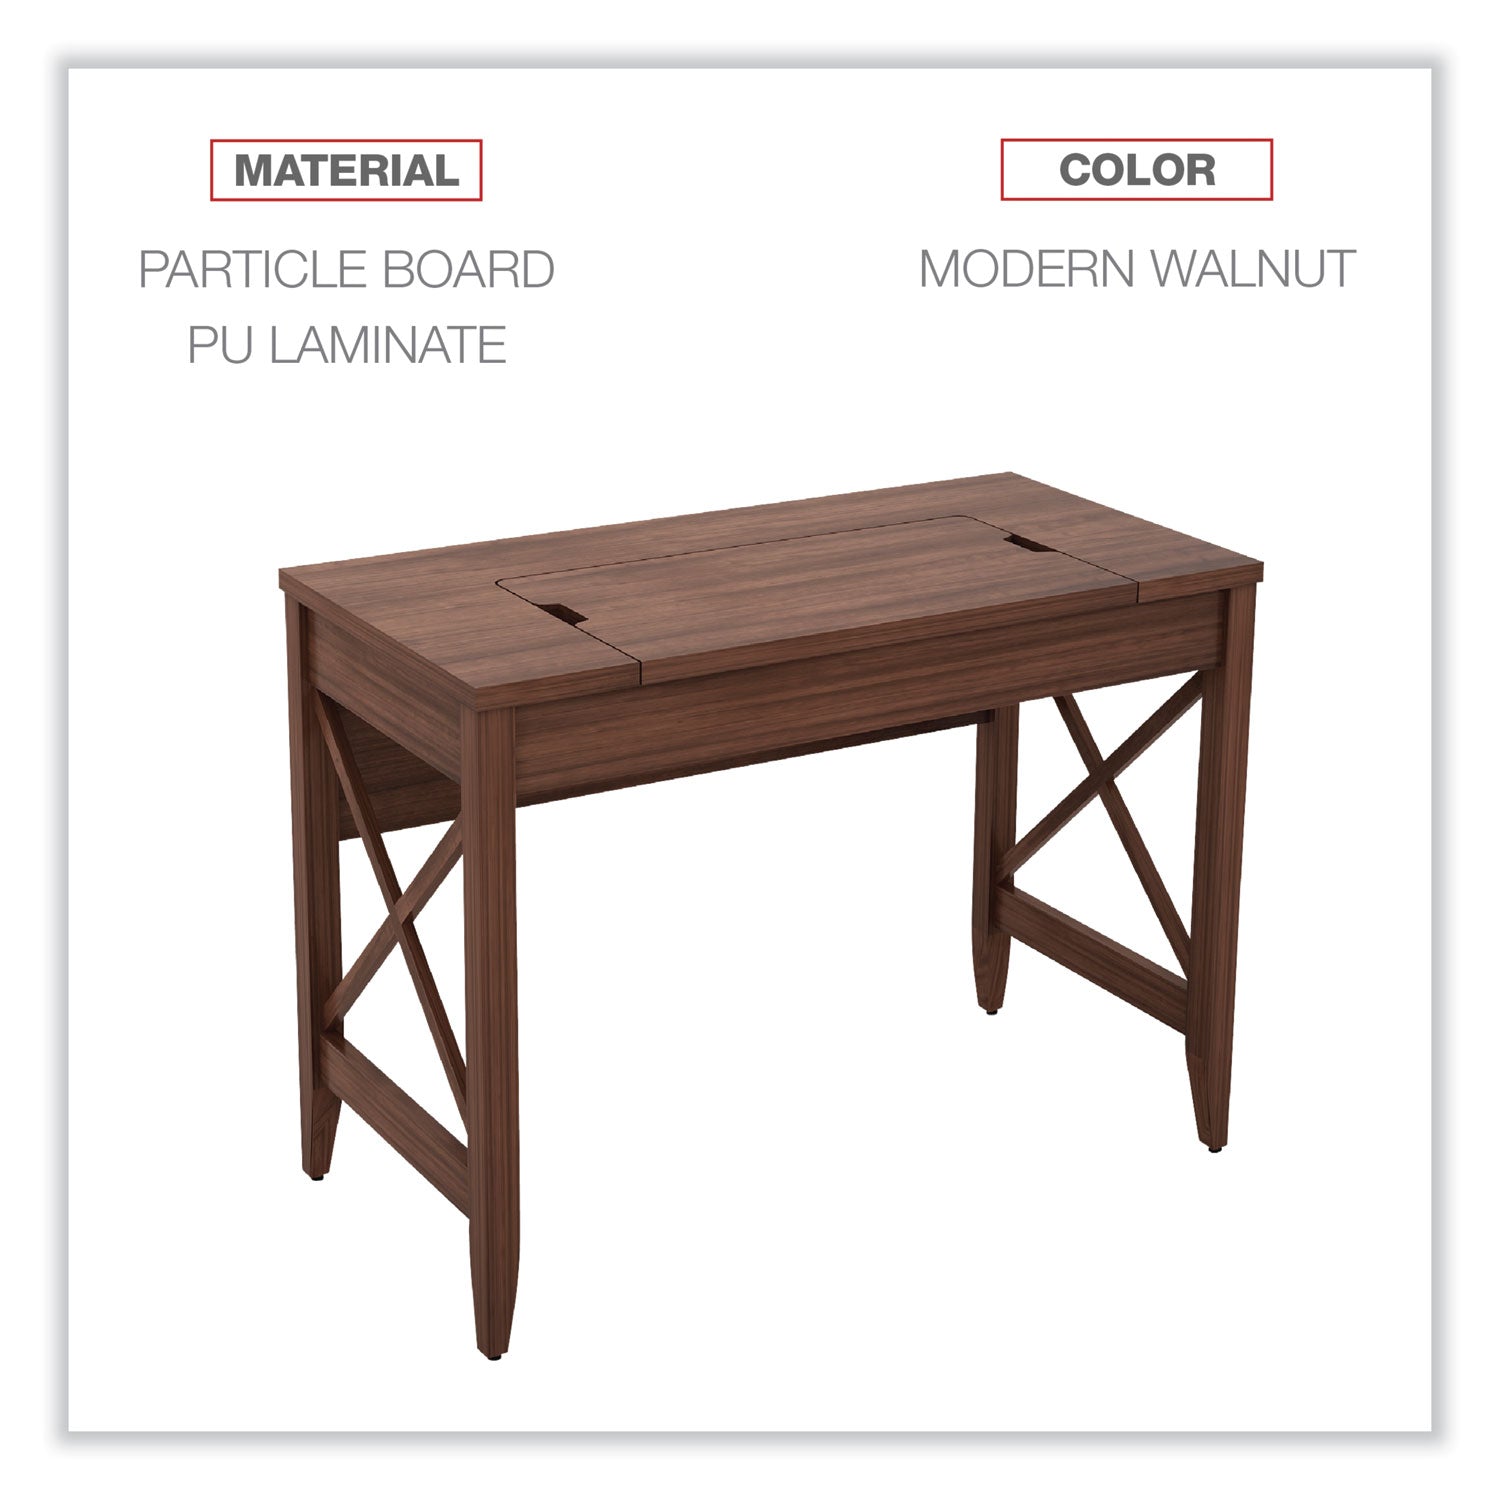 sit-to-stand-table-desk-4725-x-2363-x-295-to-4375-modern-walnut_aleld4824wa - 5